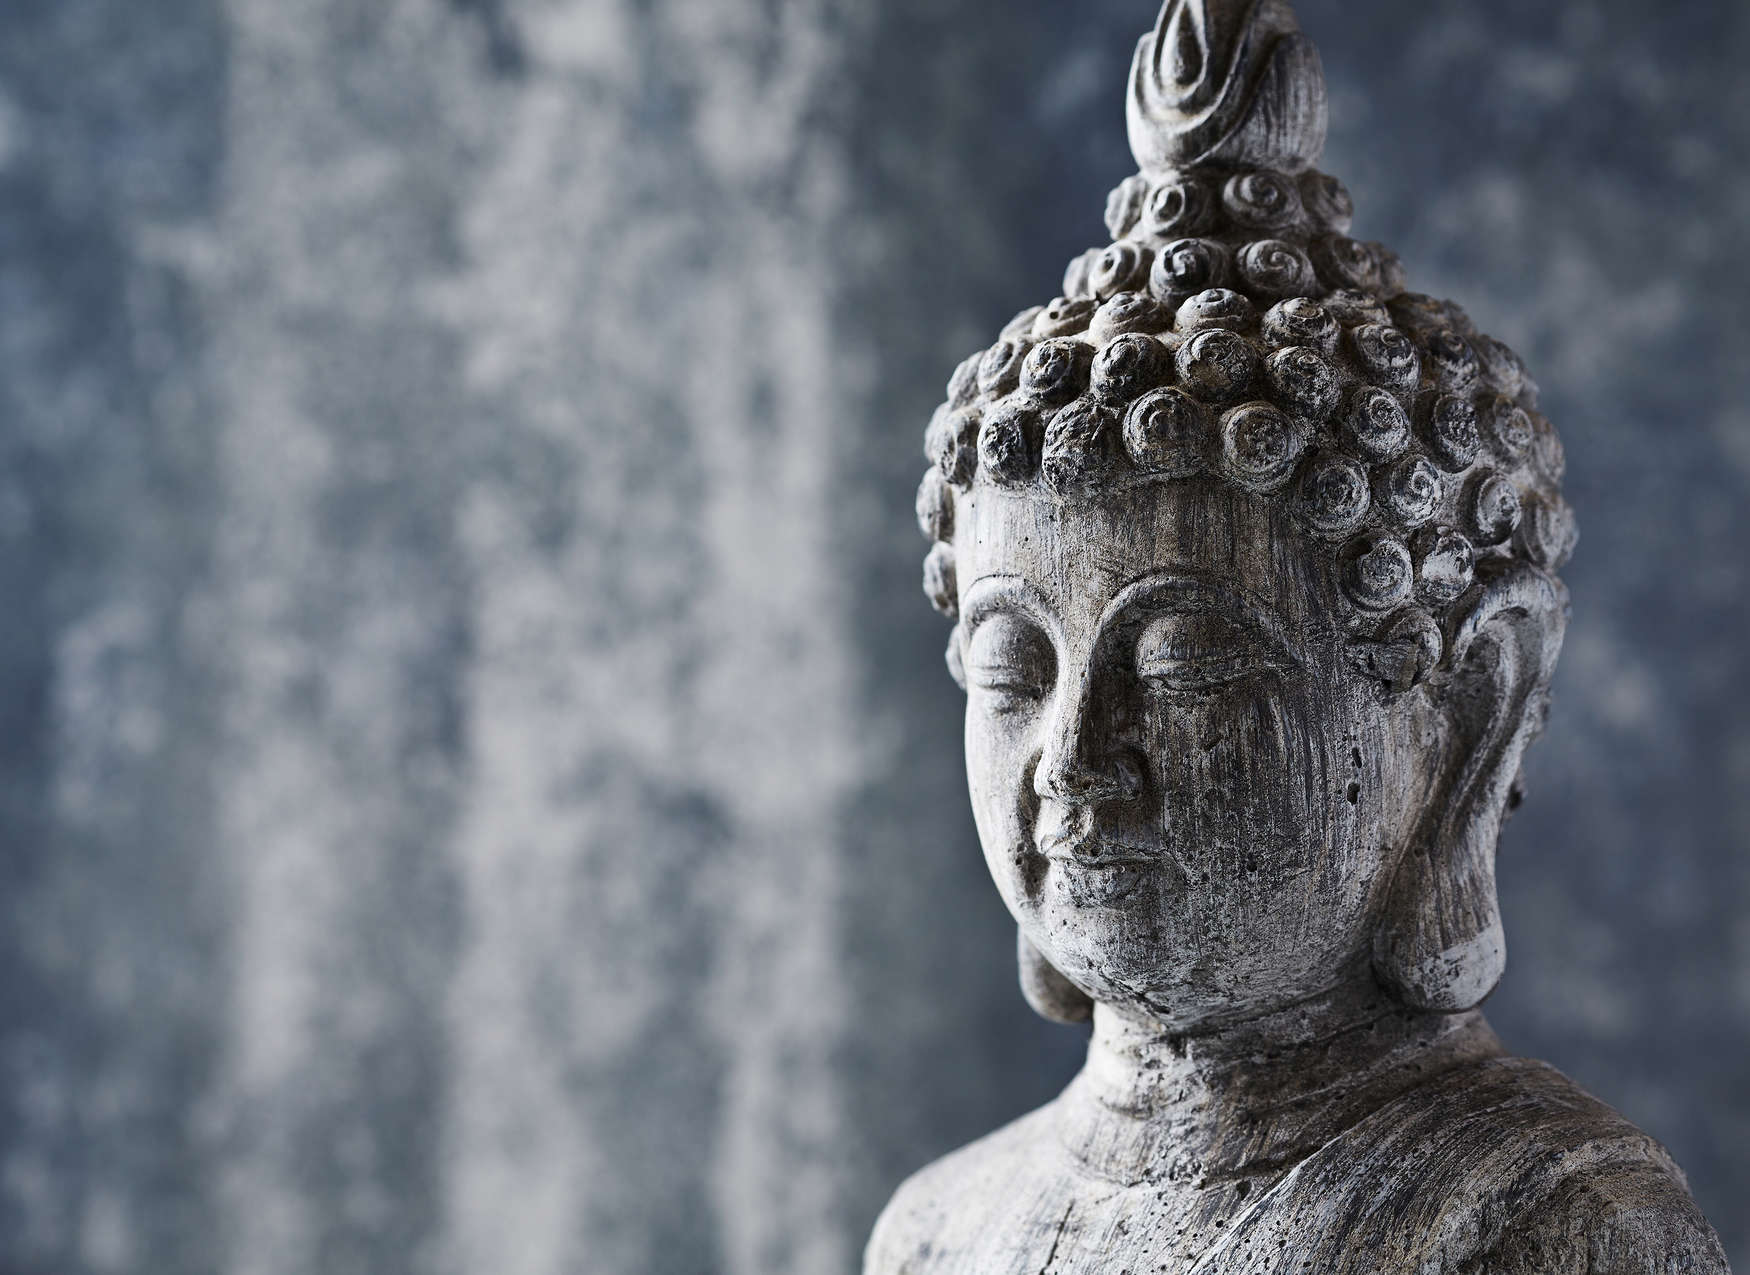             Fototapete Asiatische Stein-Skulptur – Blau, Grau
        